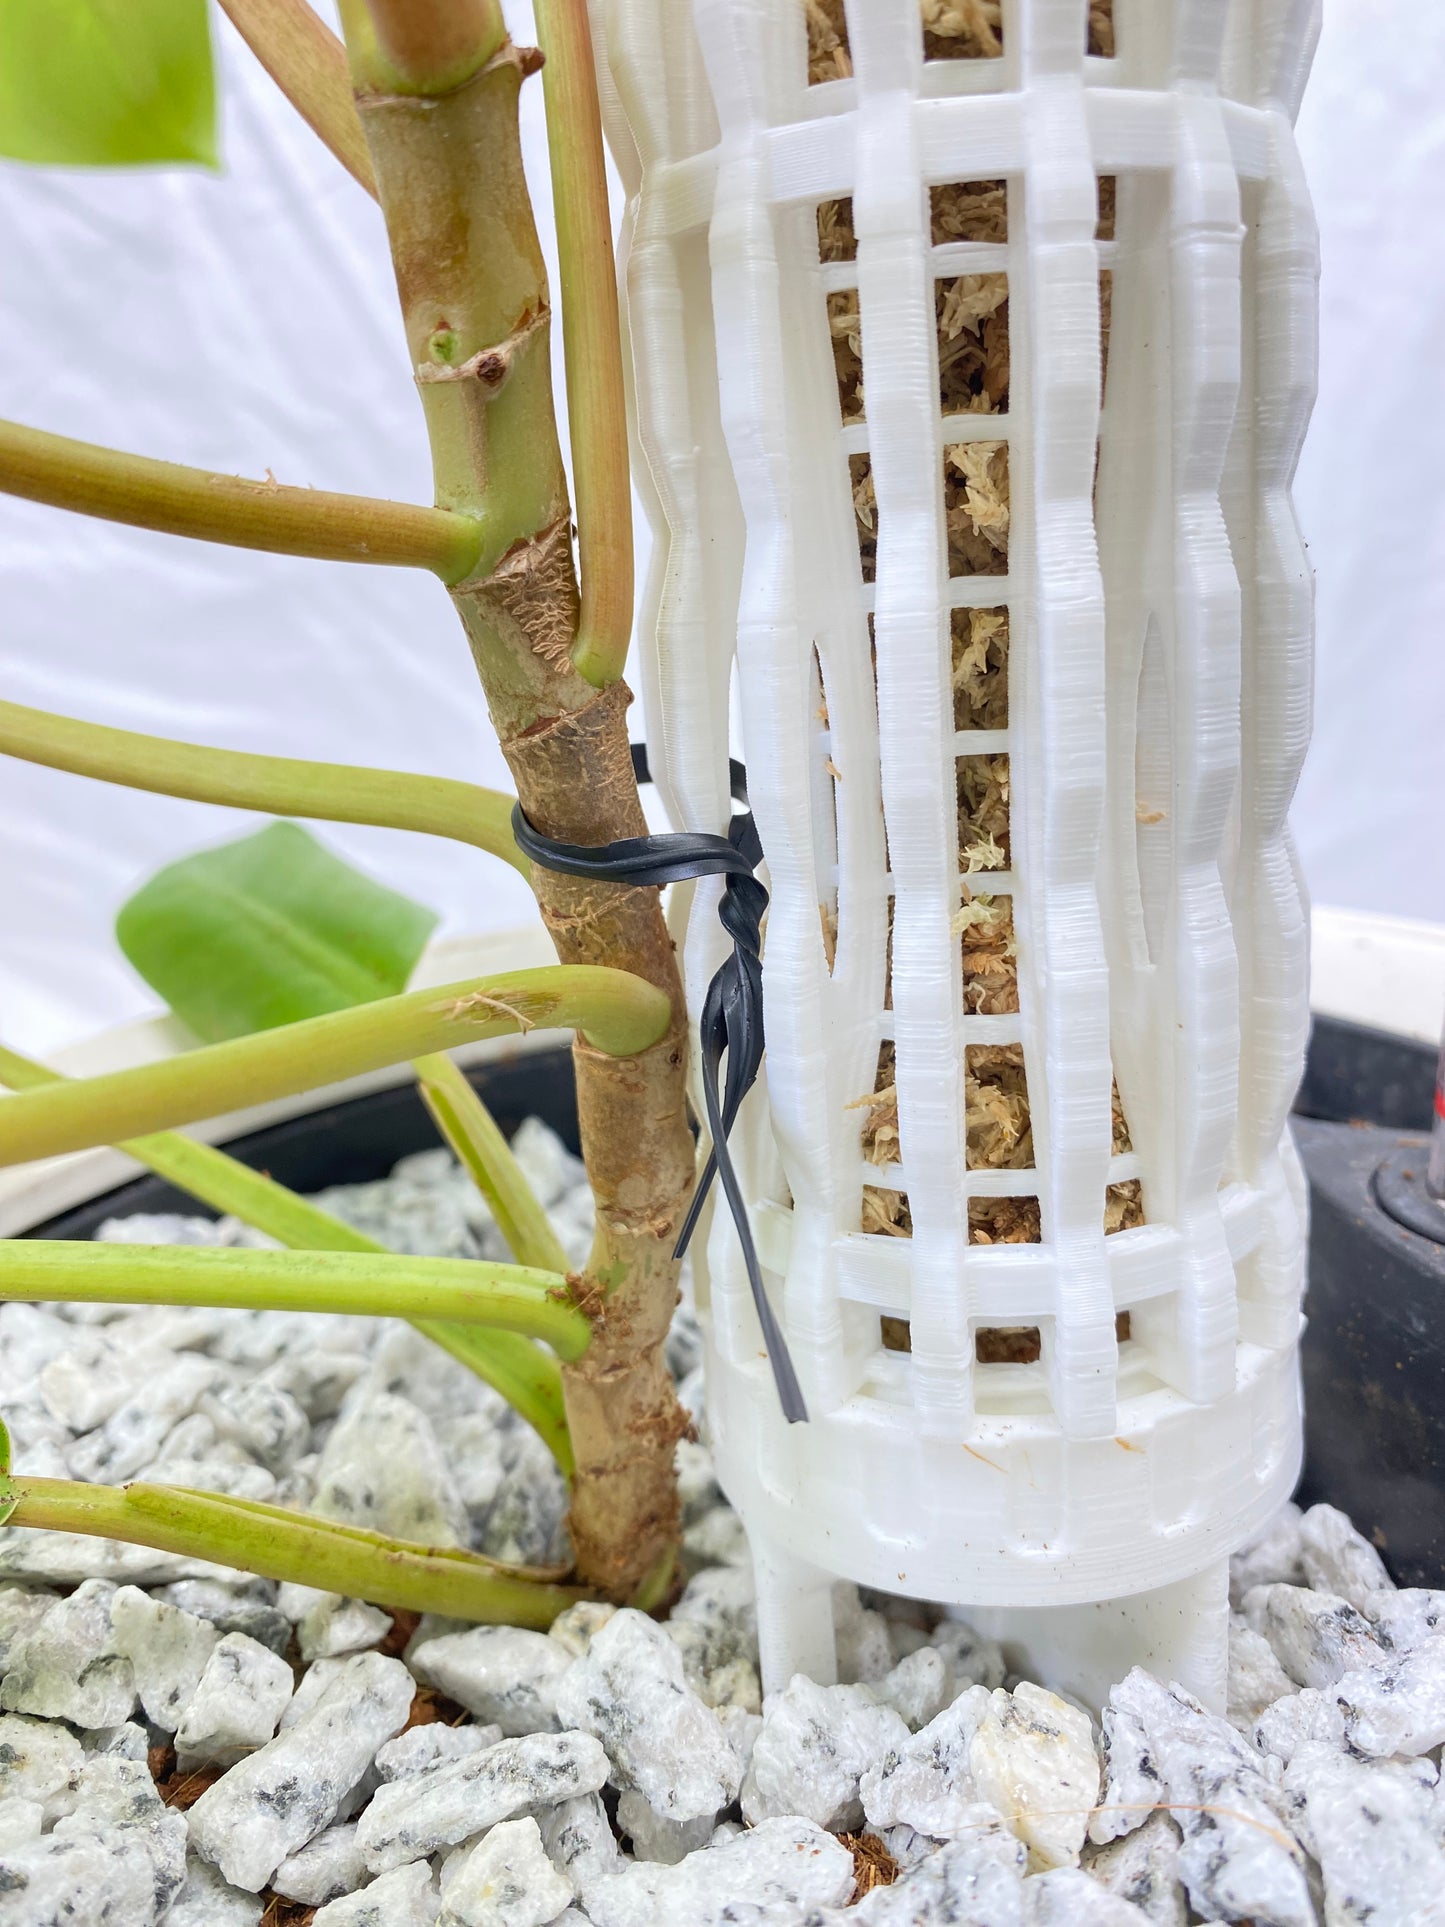 3.0″Φ/XL Pro Series Plant Poles: Enhance Your Space with the Ultra-Sturdy Extendable Boho Designer Moss Pole by OrchidBox